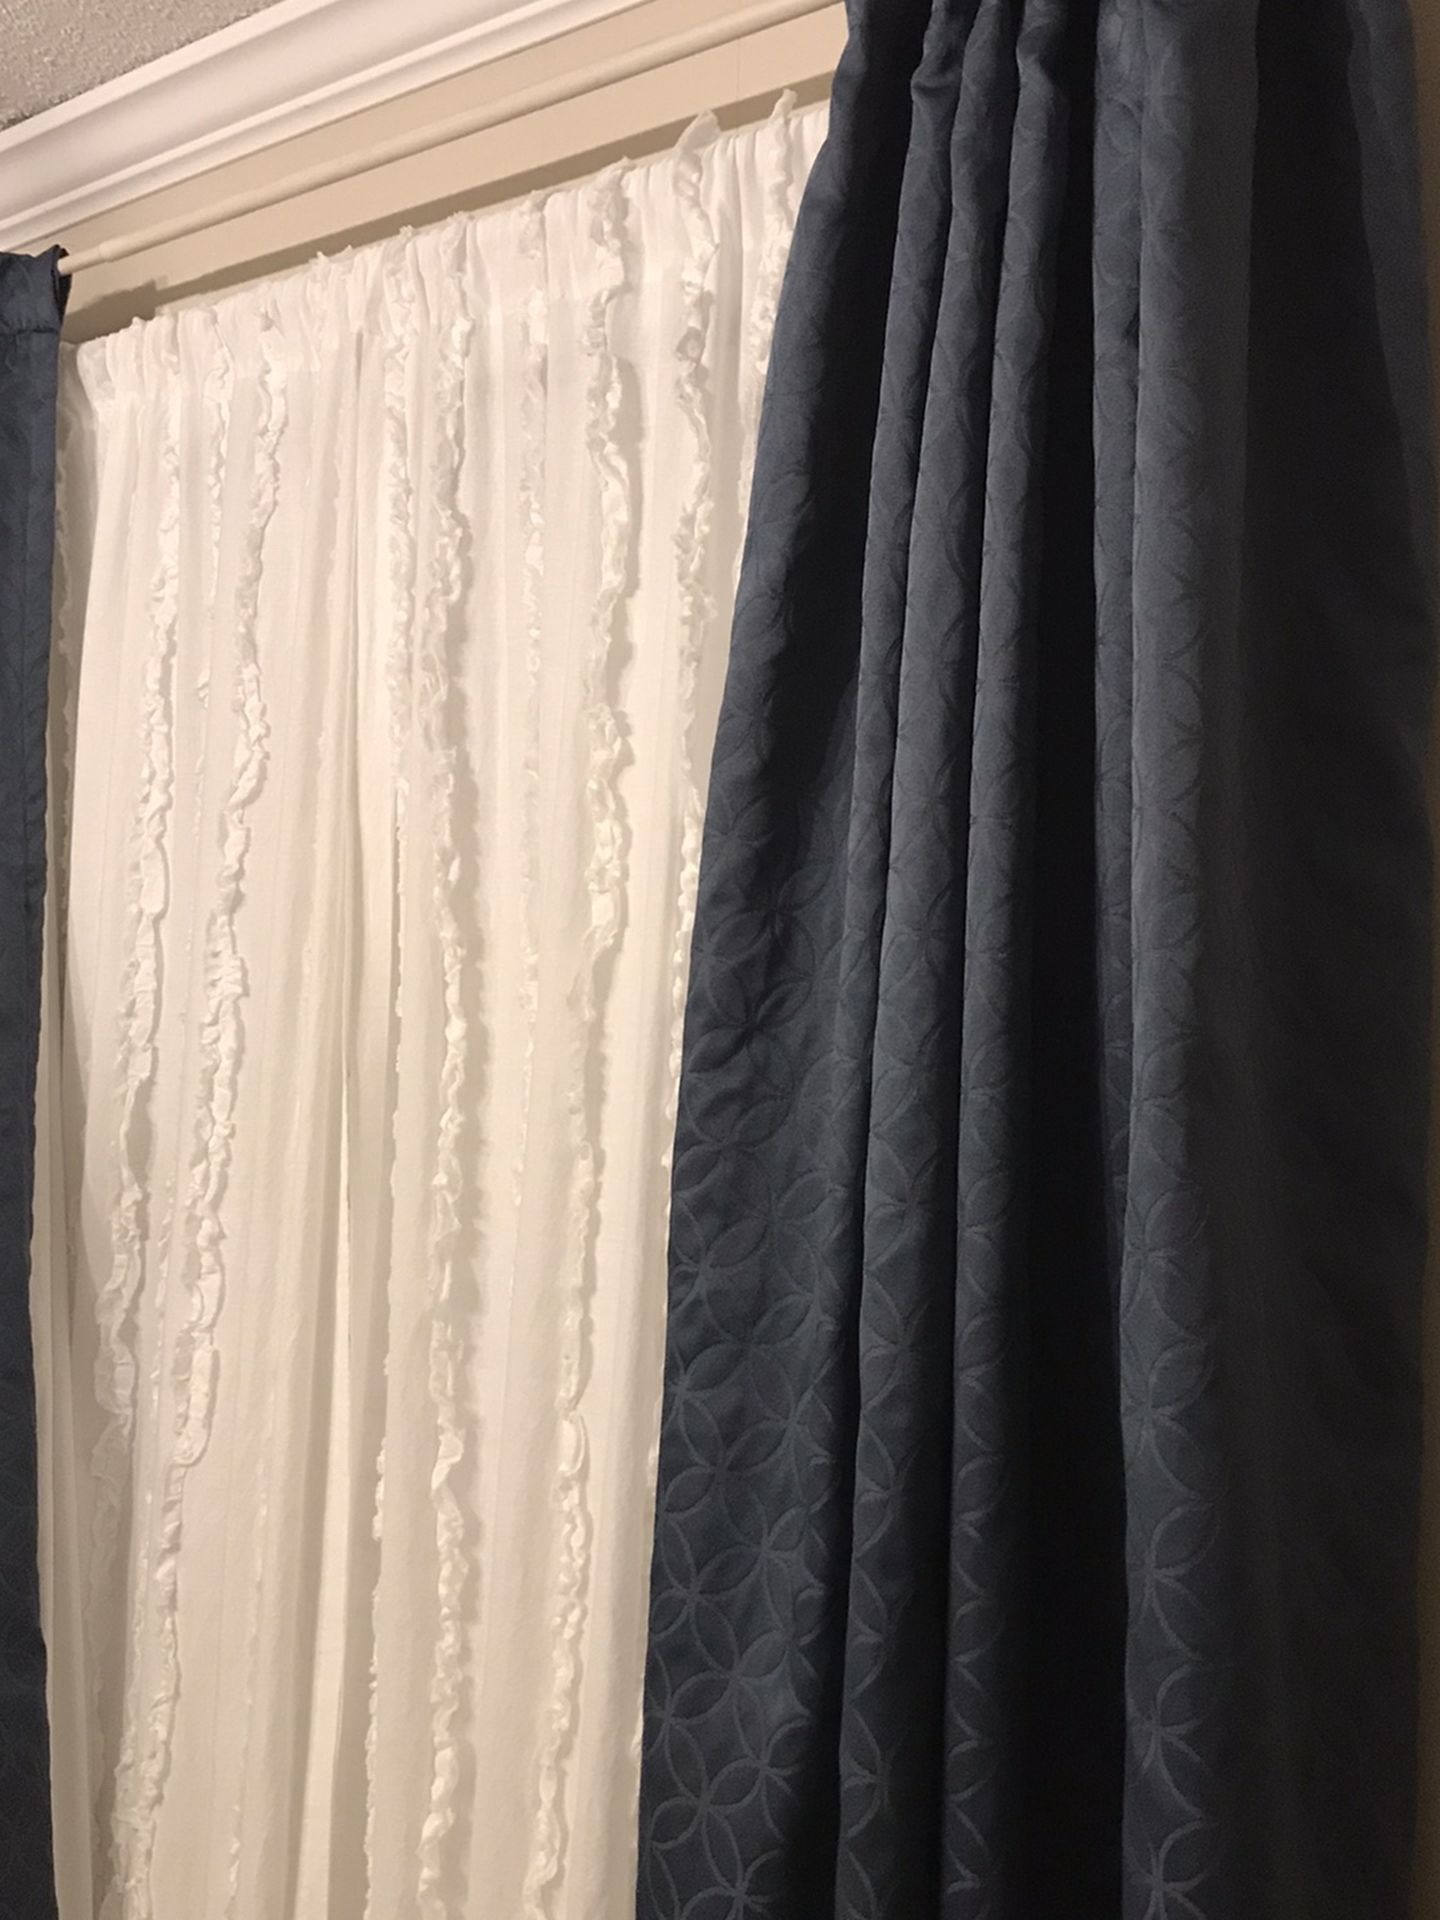 Room Darkening Curtains